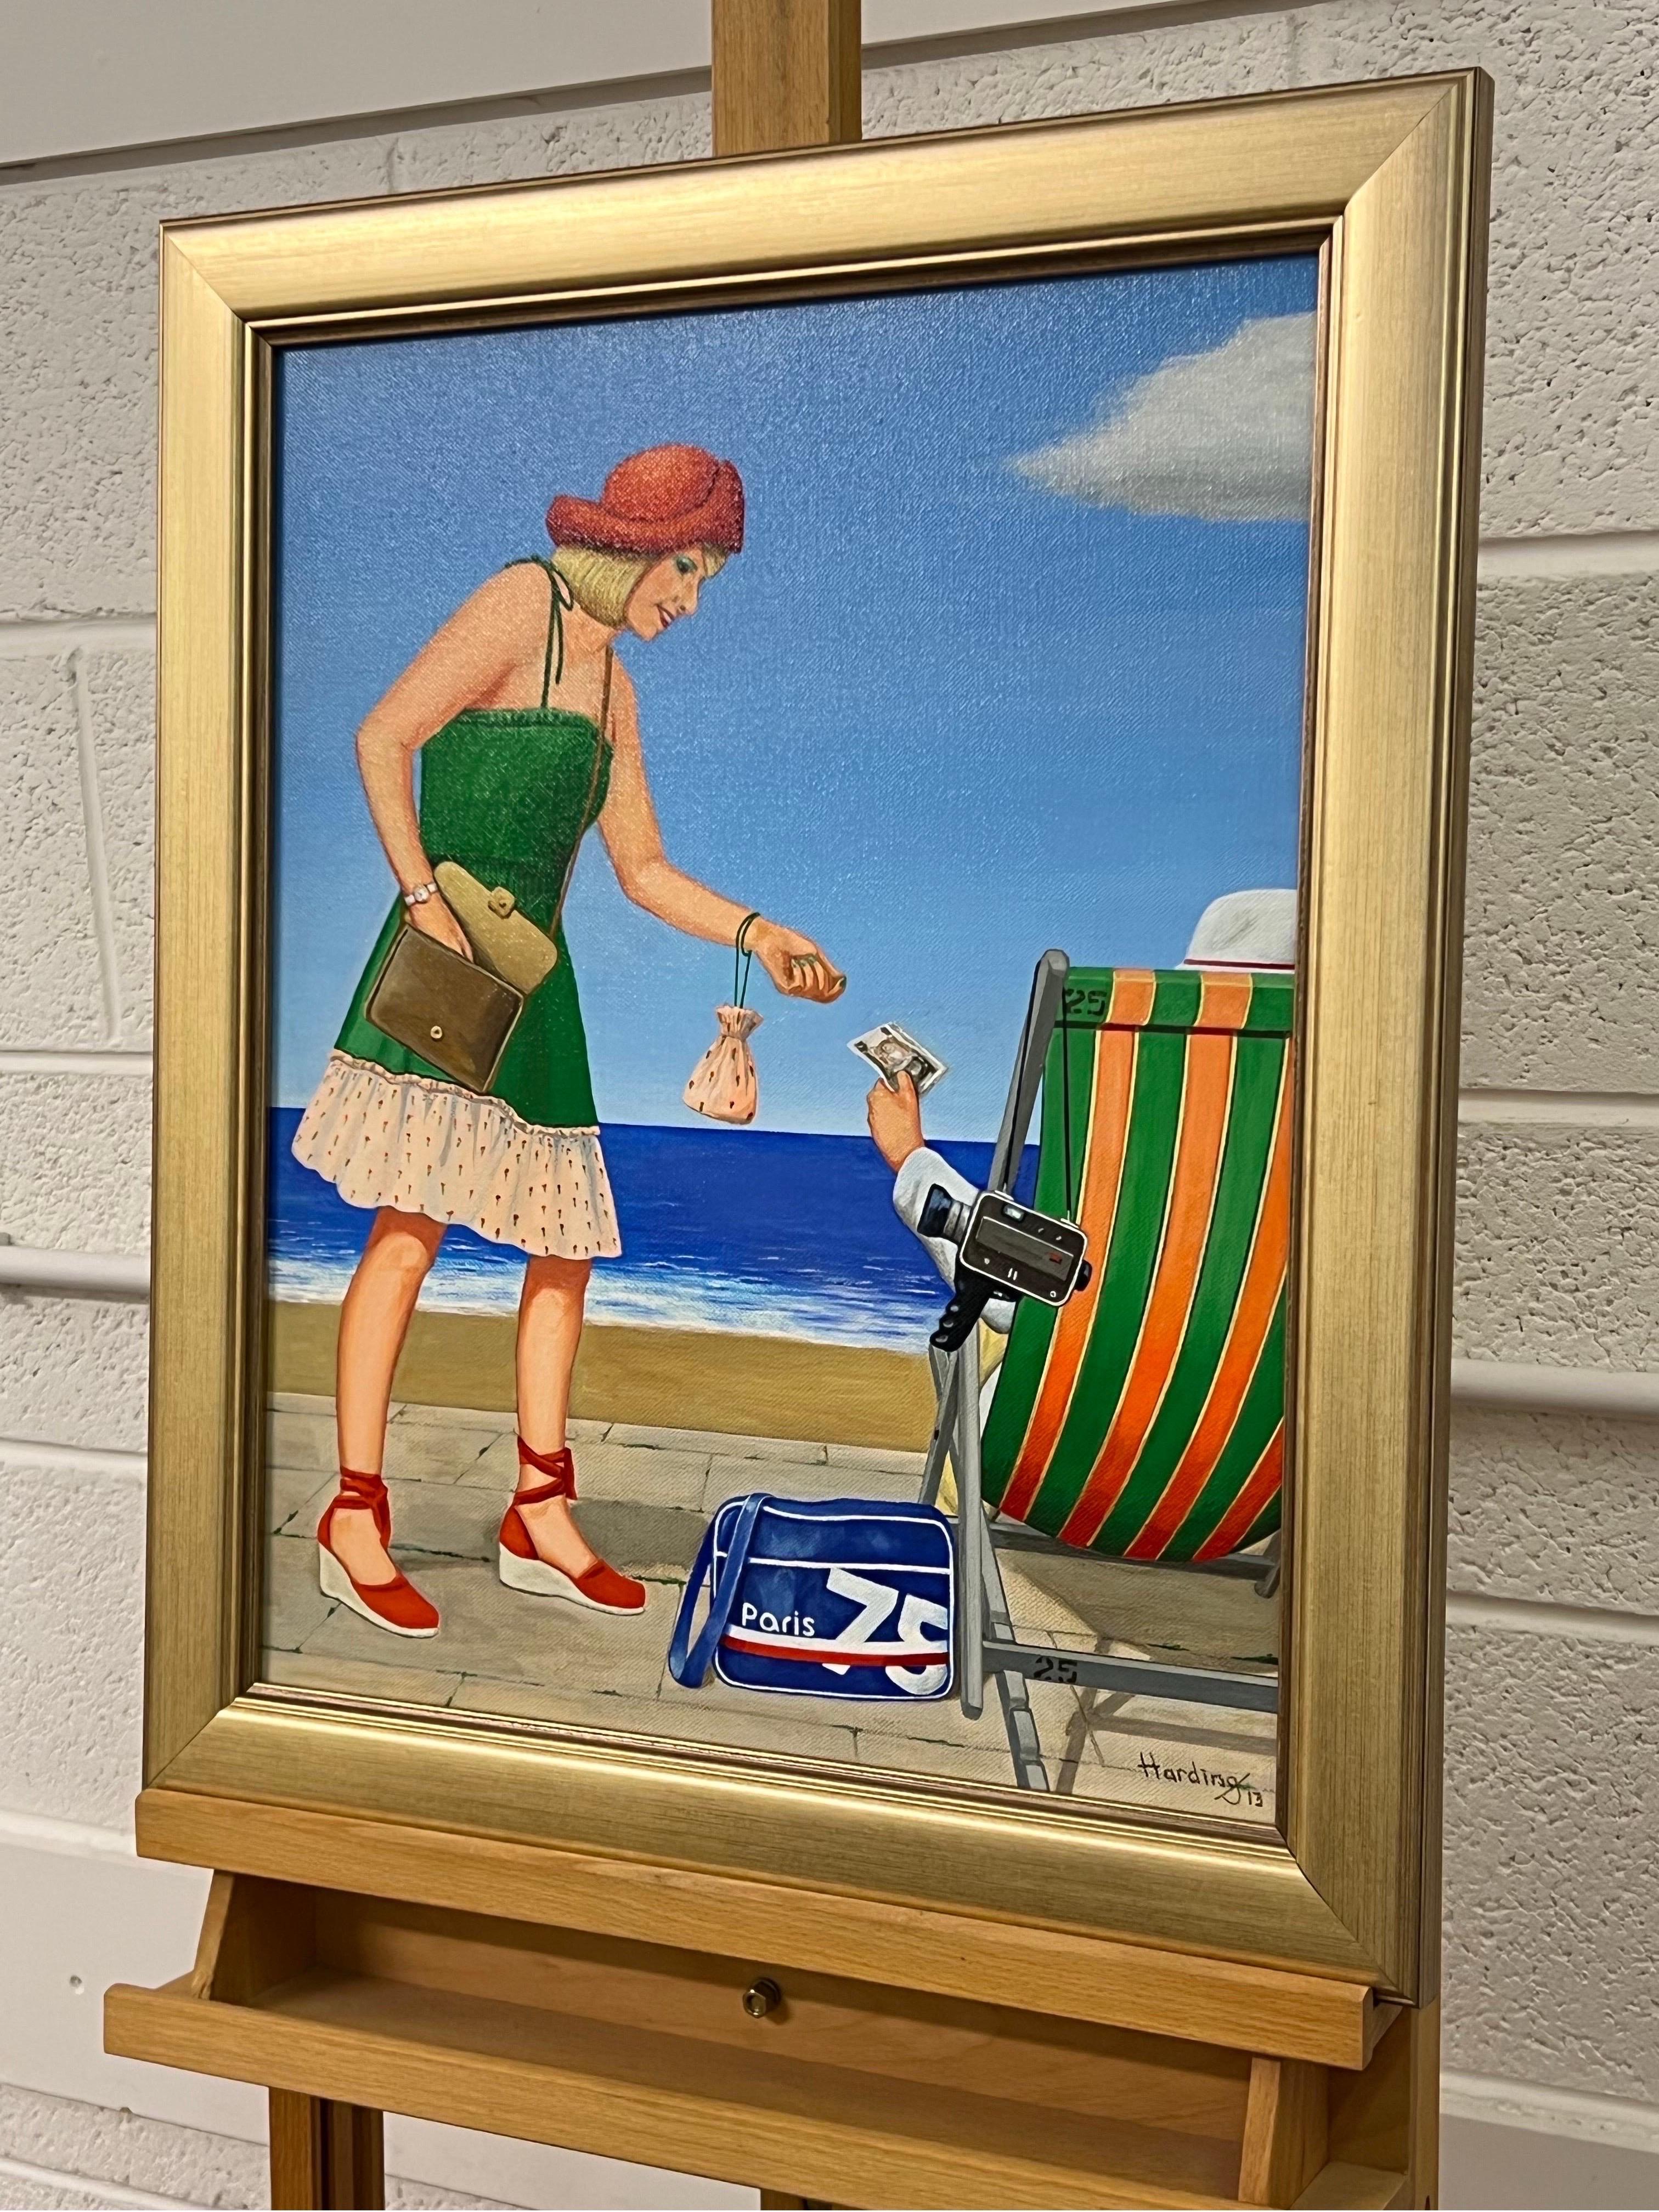 Vintage English Woman at a Seaside Beach Resort in Summer 1960's 1970's England entitled 'Summer Collection 1' by Retro Nostalgic Artist, Paul F&F Vintage. Signé, original, huile sur toile. Présenté dans un cadre en or.

L'œuvre d'art mesure 16 x 20